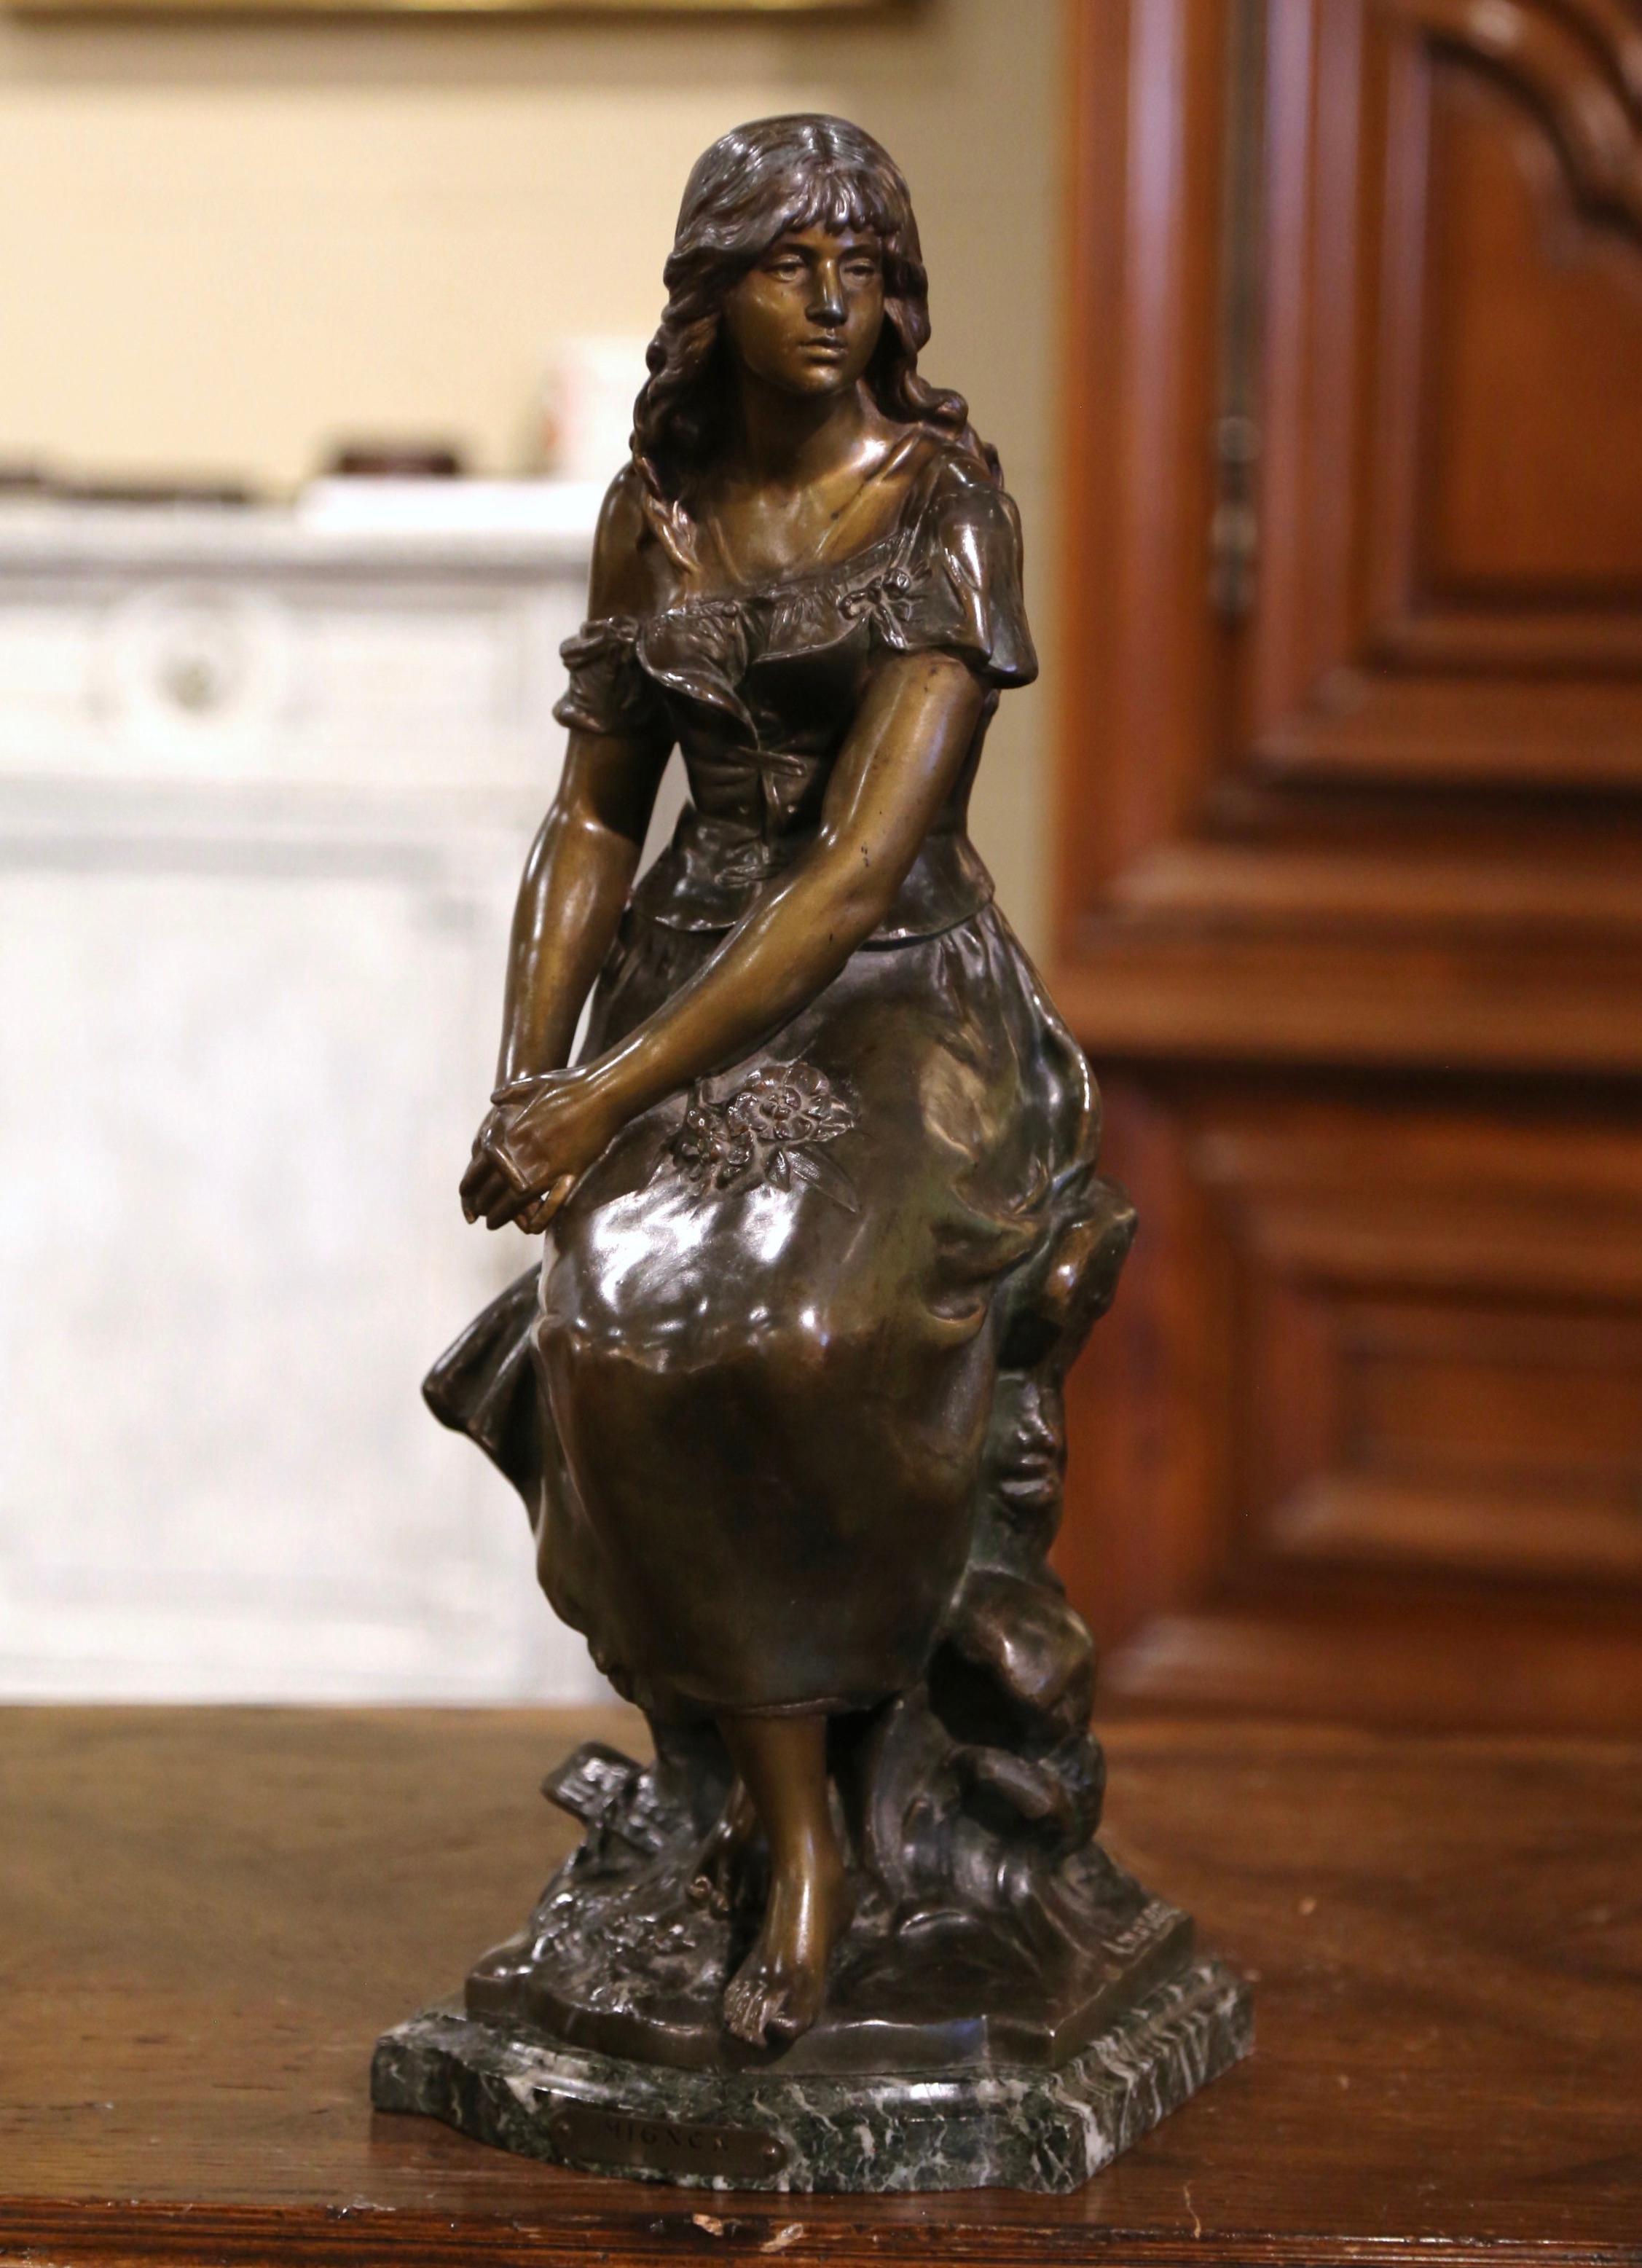 Cette élégante composition de figures a été fabriquée en France vers 1880. Construite en fonte, la statue repose sur un socle en marbre noir et gris façonné, et représente une jeune beauté féminine assise sur un tronc, les mains croisées sur les